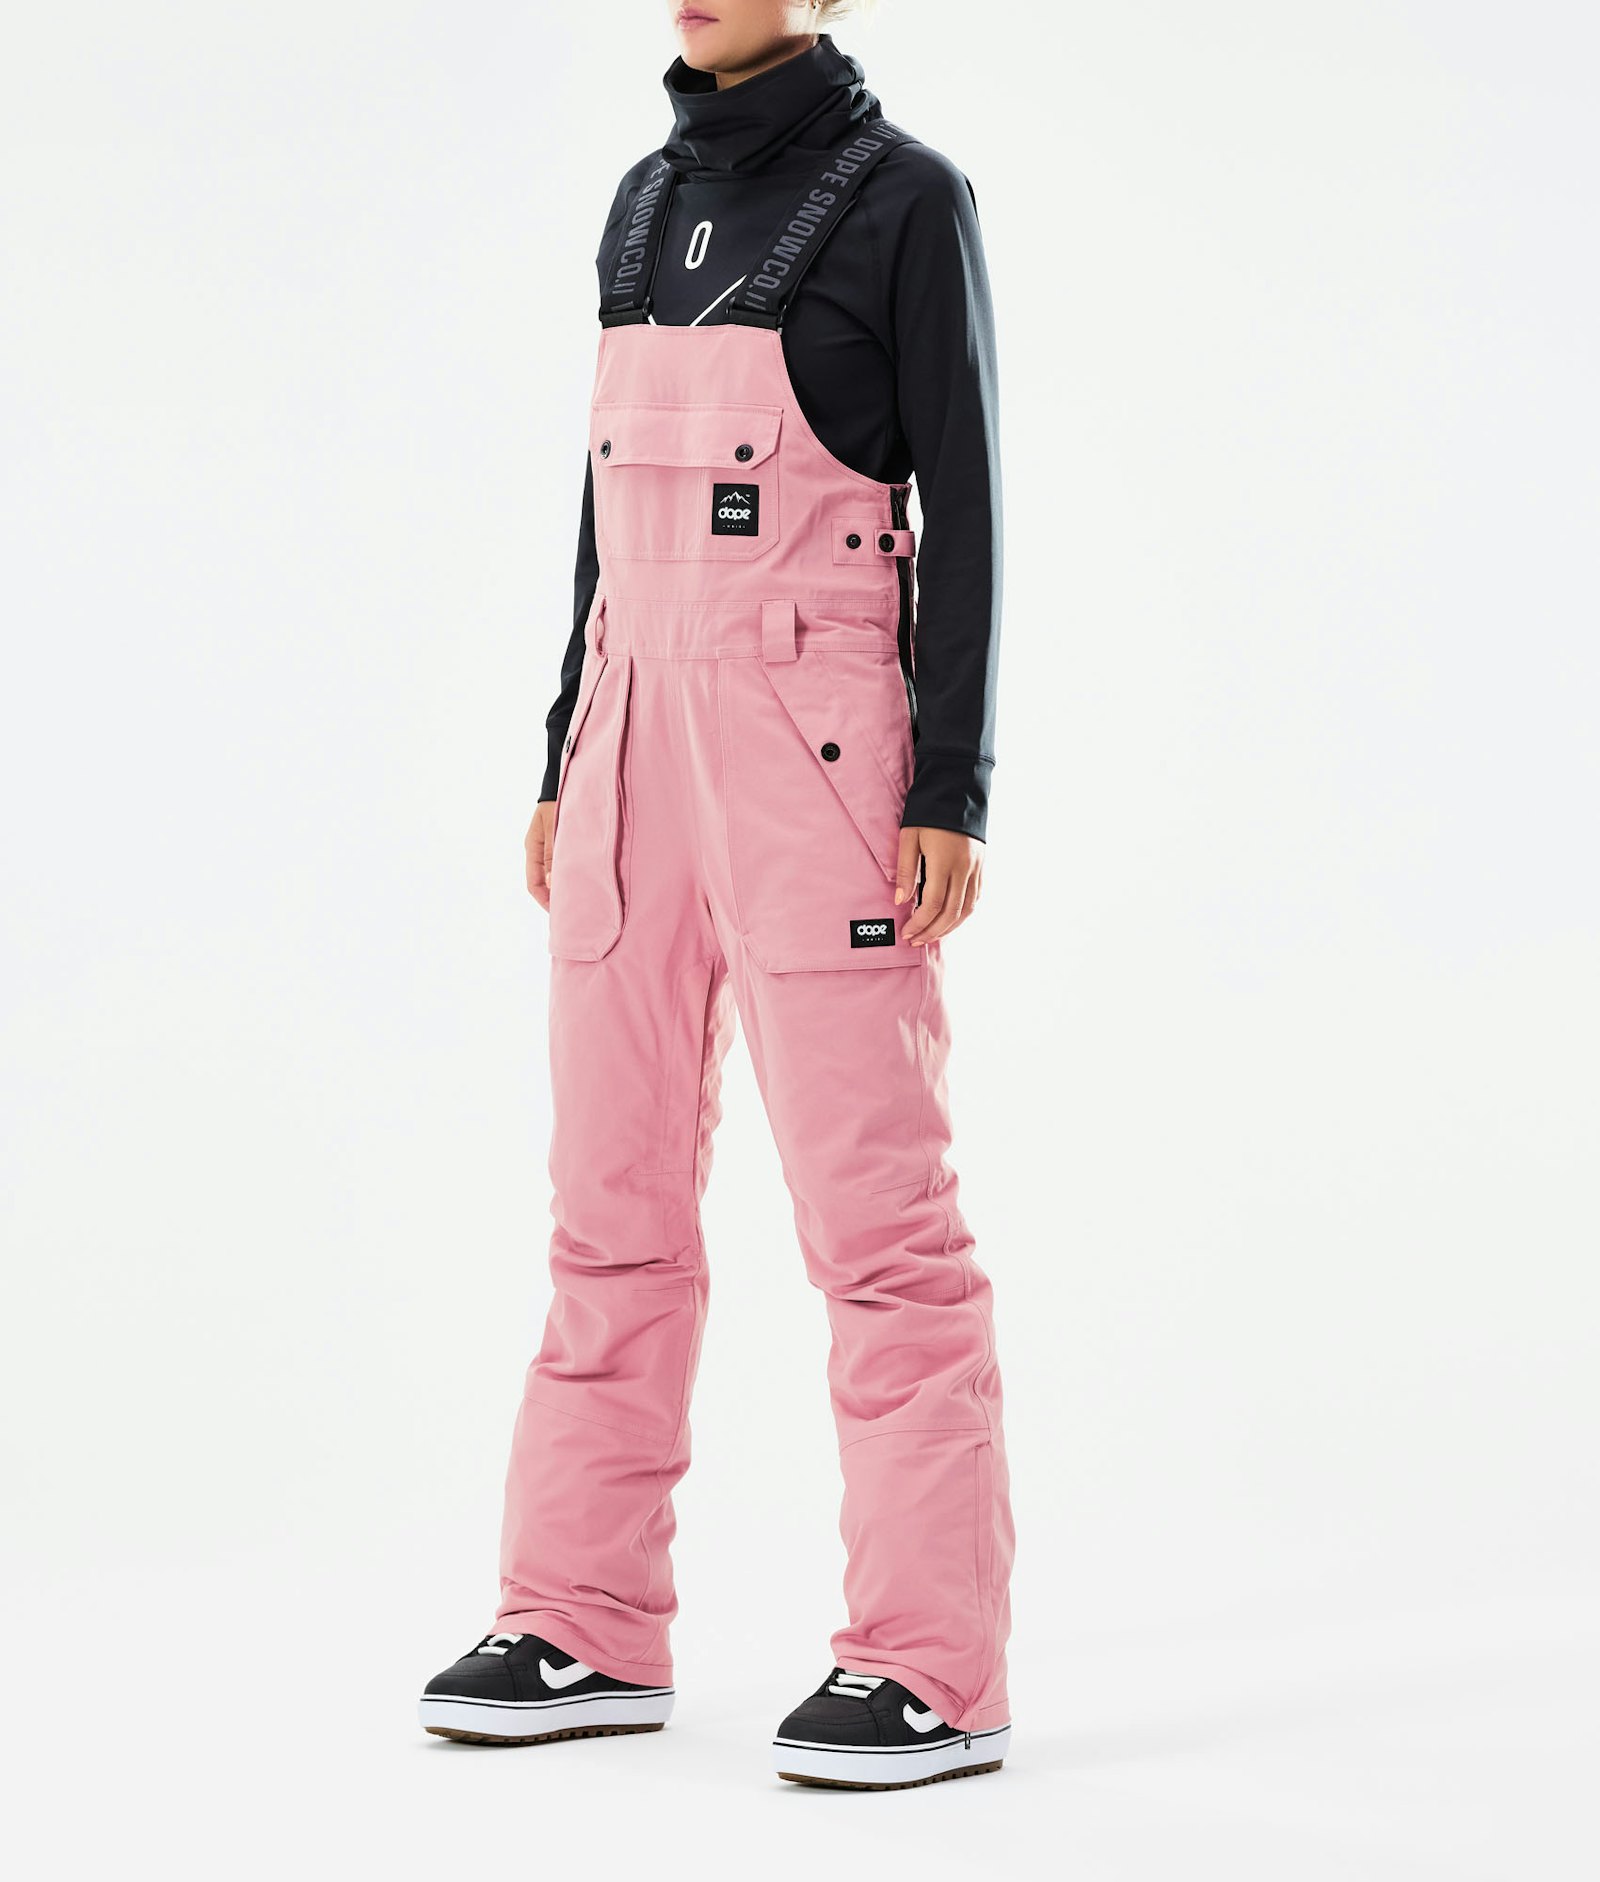 Notorious B.I.B W 2021 Pantalones Snowboard Mujer Pink